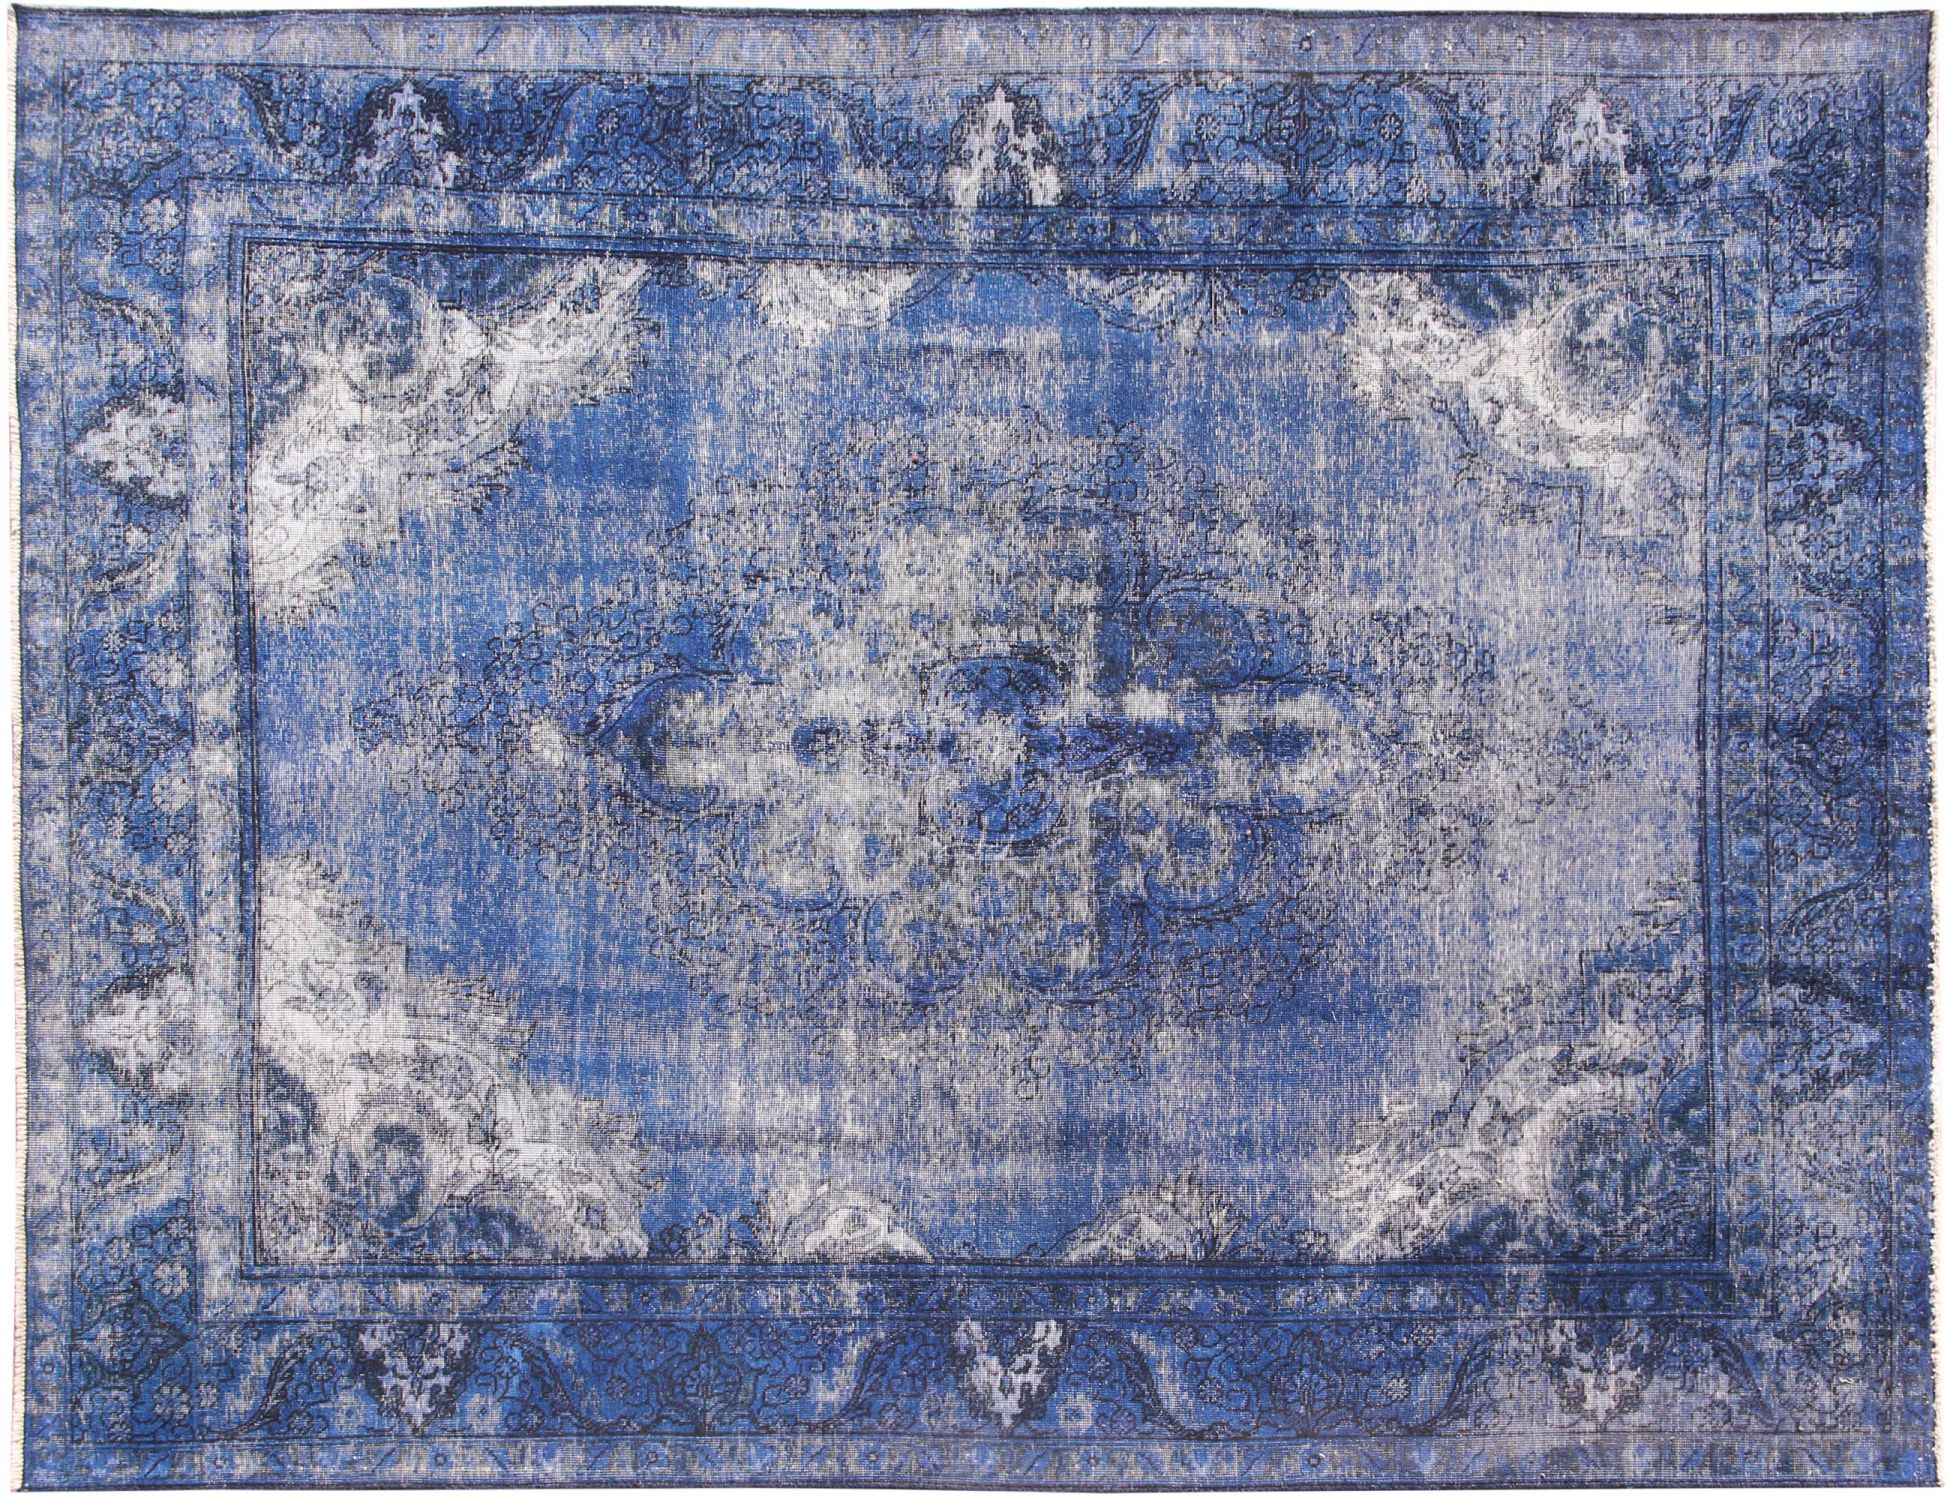 Persischer Vintage Teppich  blau <br/>323 x 235 cm